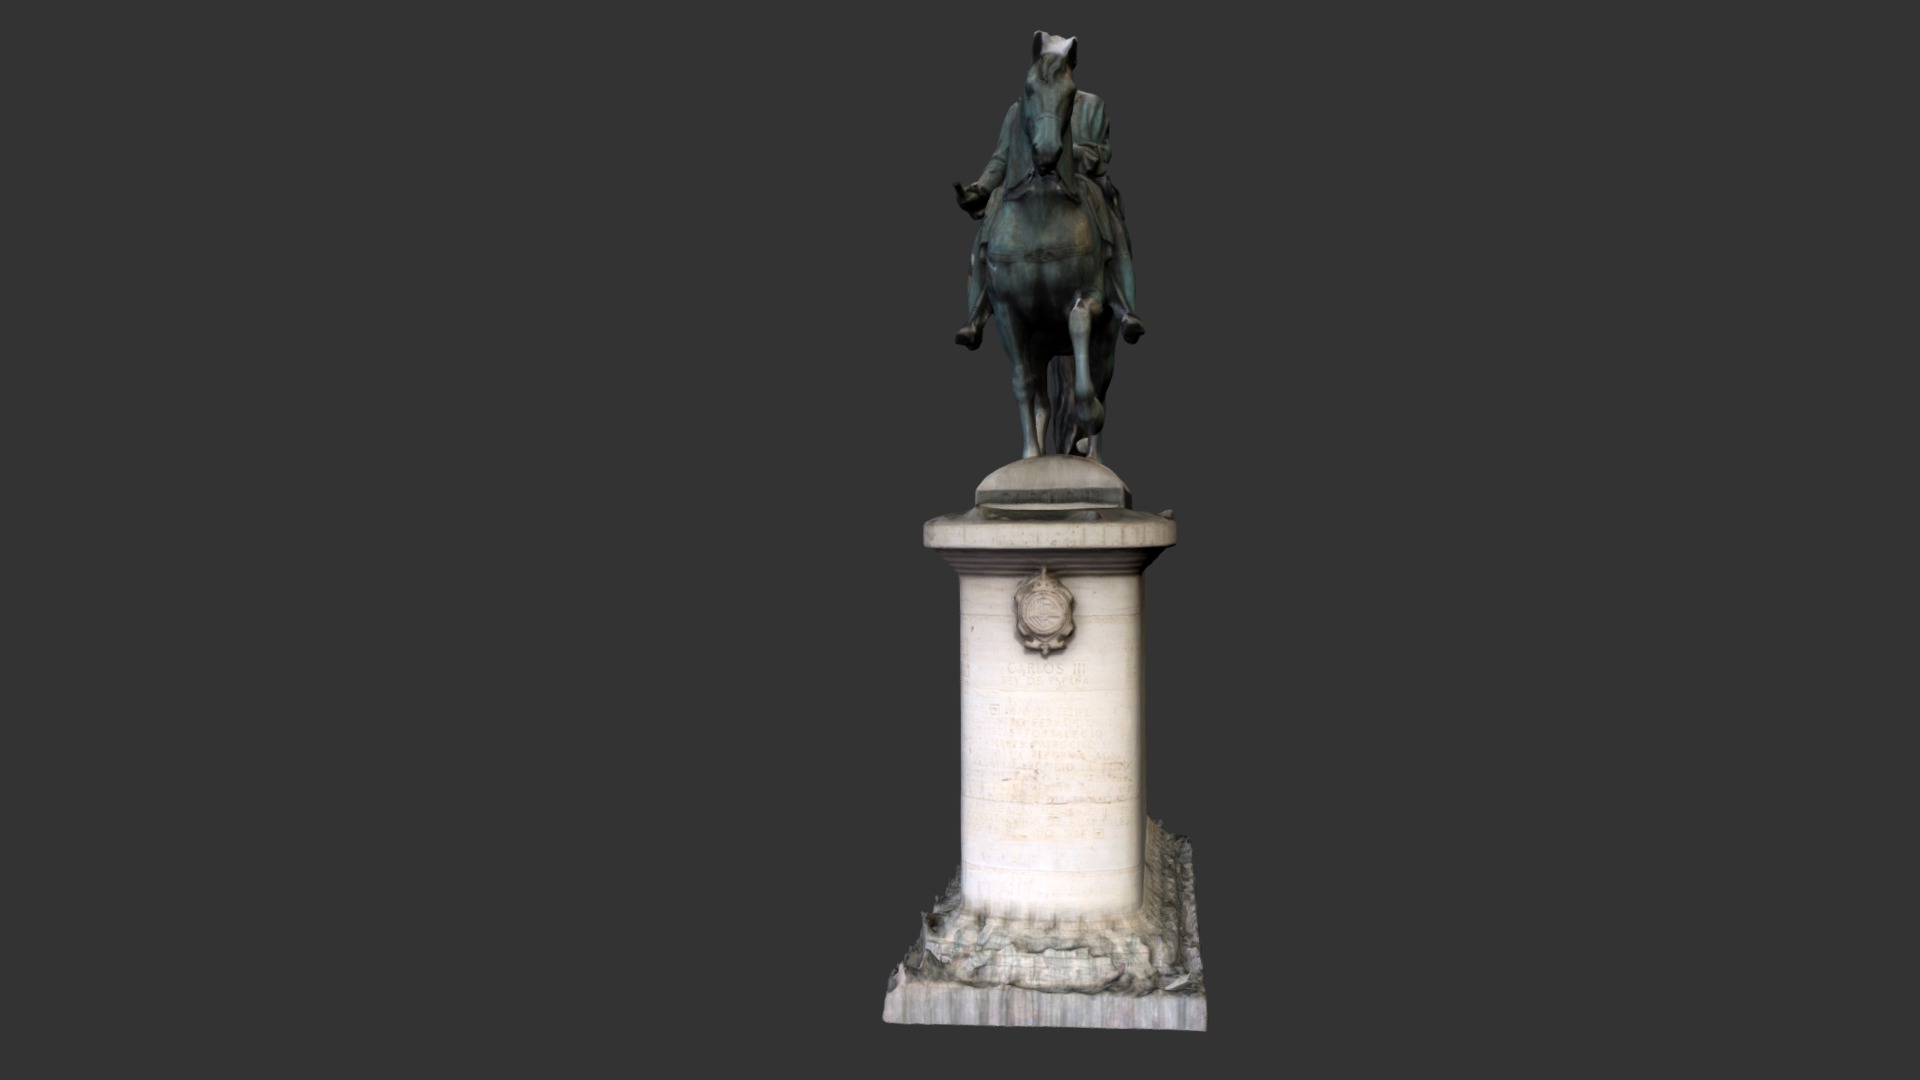 Modelado 3D de la estatua de CarlosIII ver en https://www.youtube.com/watch?v=PZMCp0dEkms&amp;list=PL9tXAuog1dS-G4Y_J-JlIr1wtqDKo_LWb&amp;index=24 - Estatua ecuestre  Carlos III Puerta Sol Madrid - 3D model by drrcarlos 3d model